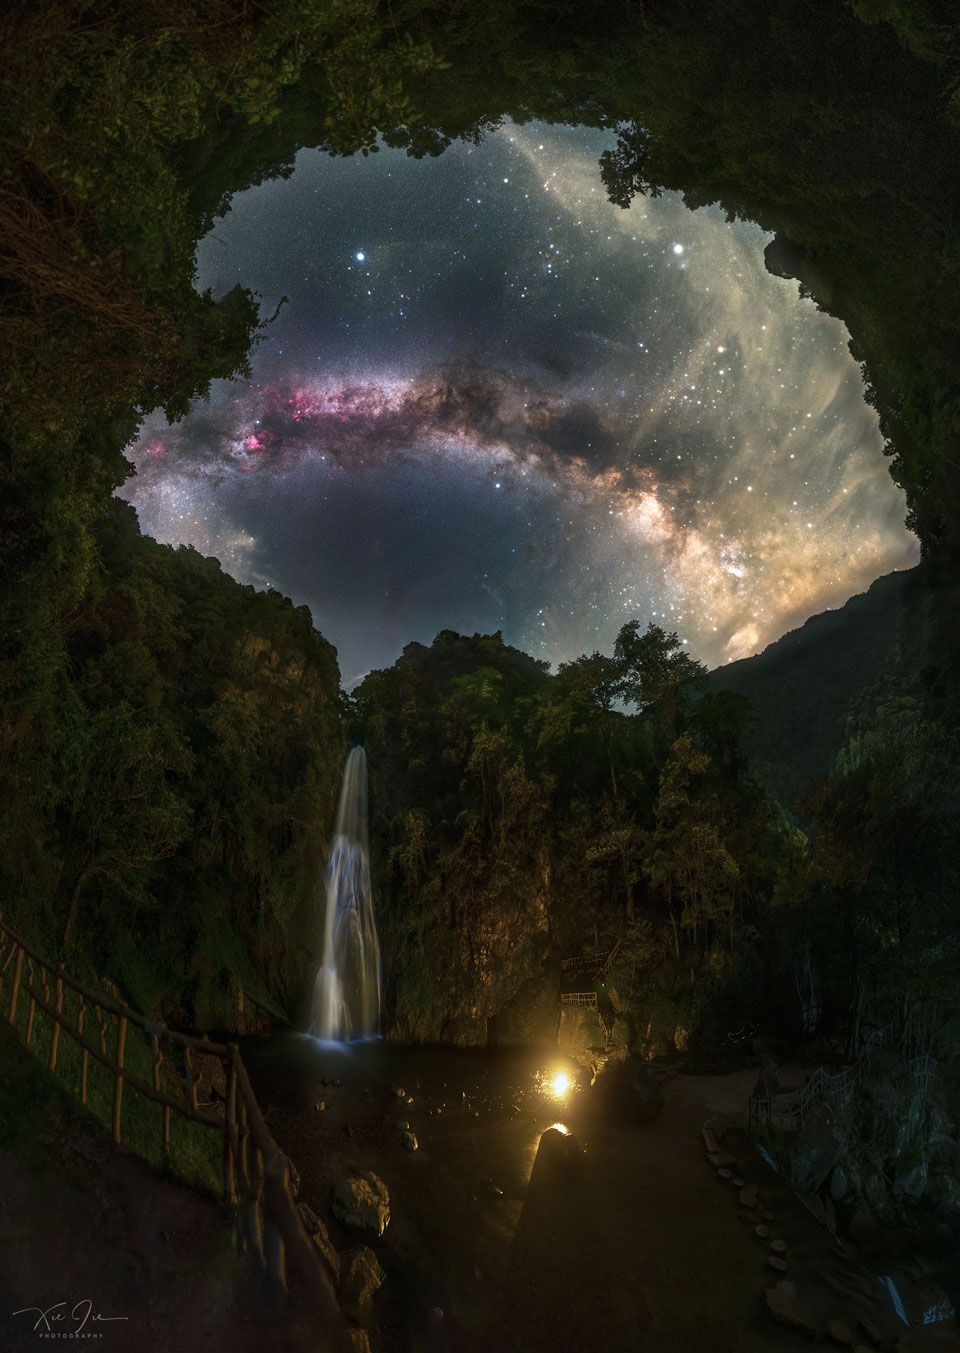 这张照片显示的是拱型银河夜空下的瀑布。有关更多详细信息，请参阅说明。